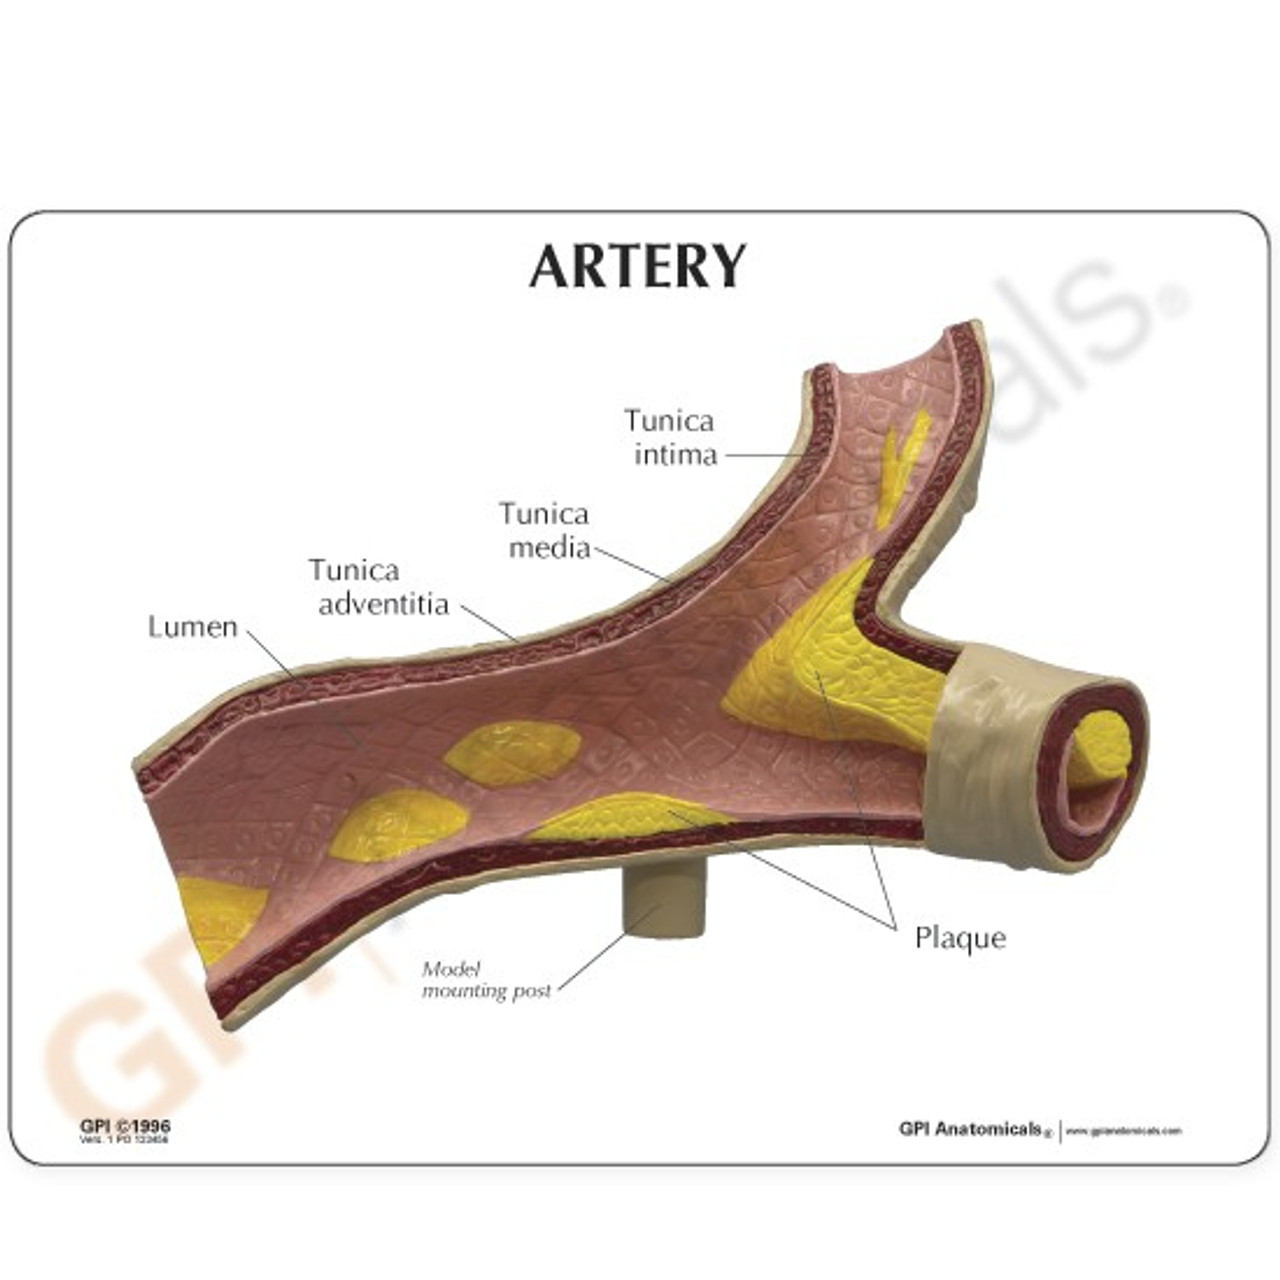 Artery Model Description Card